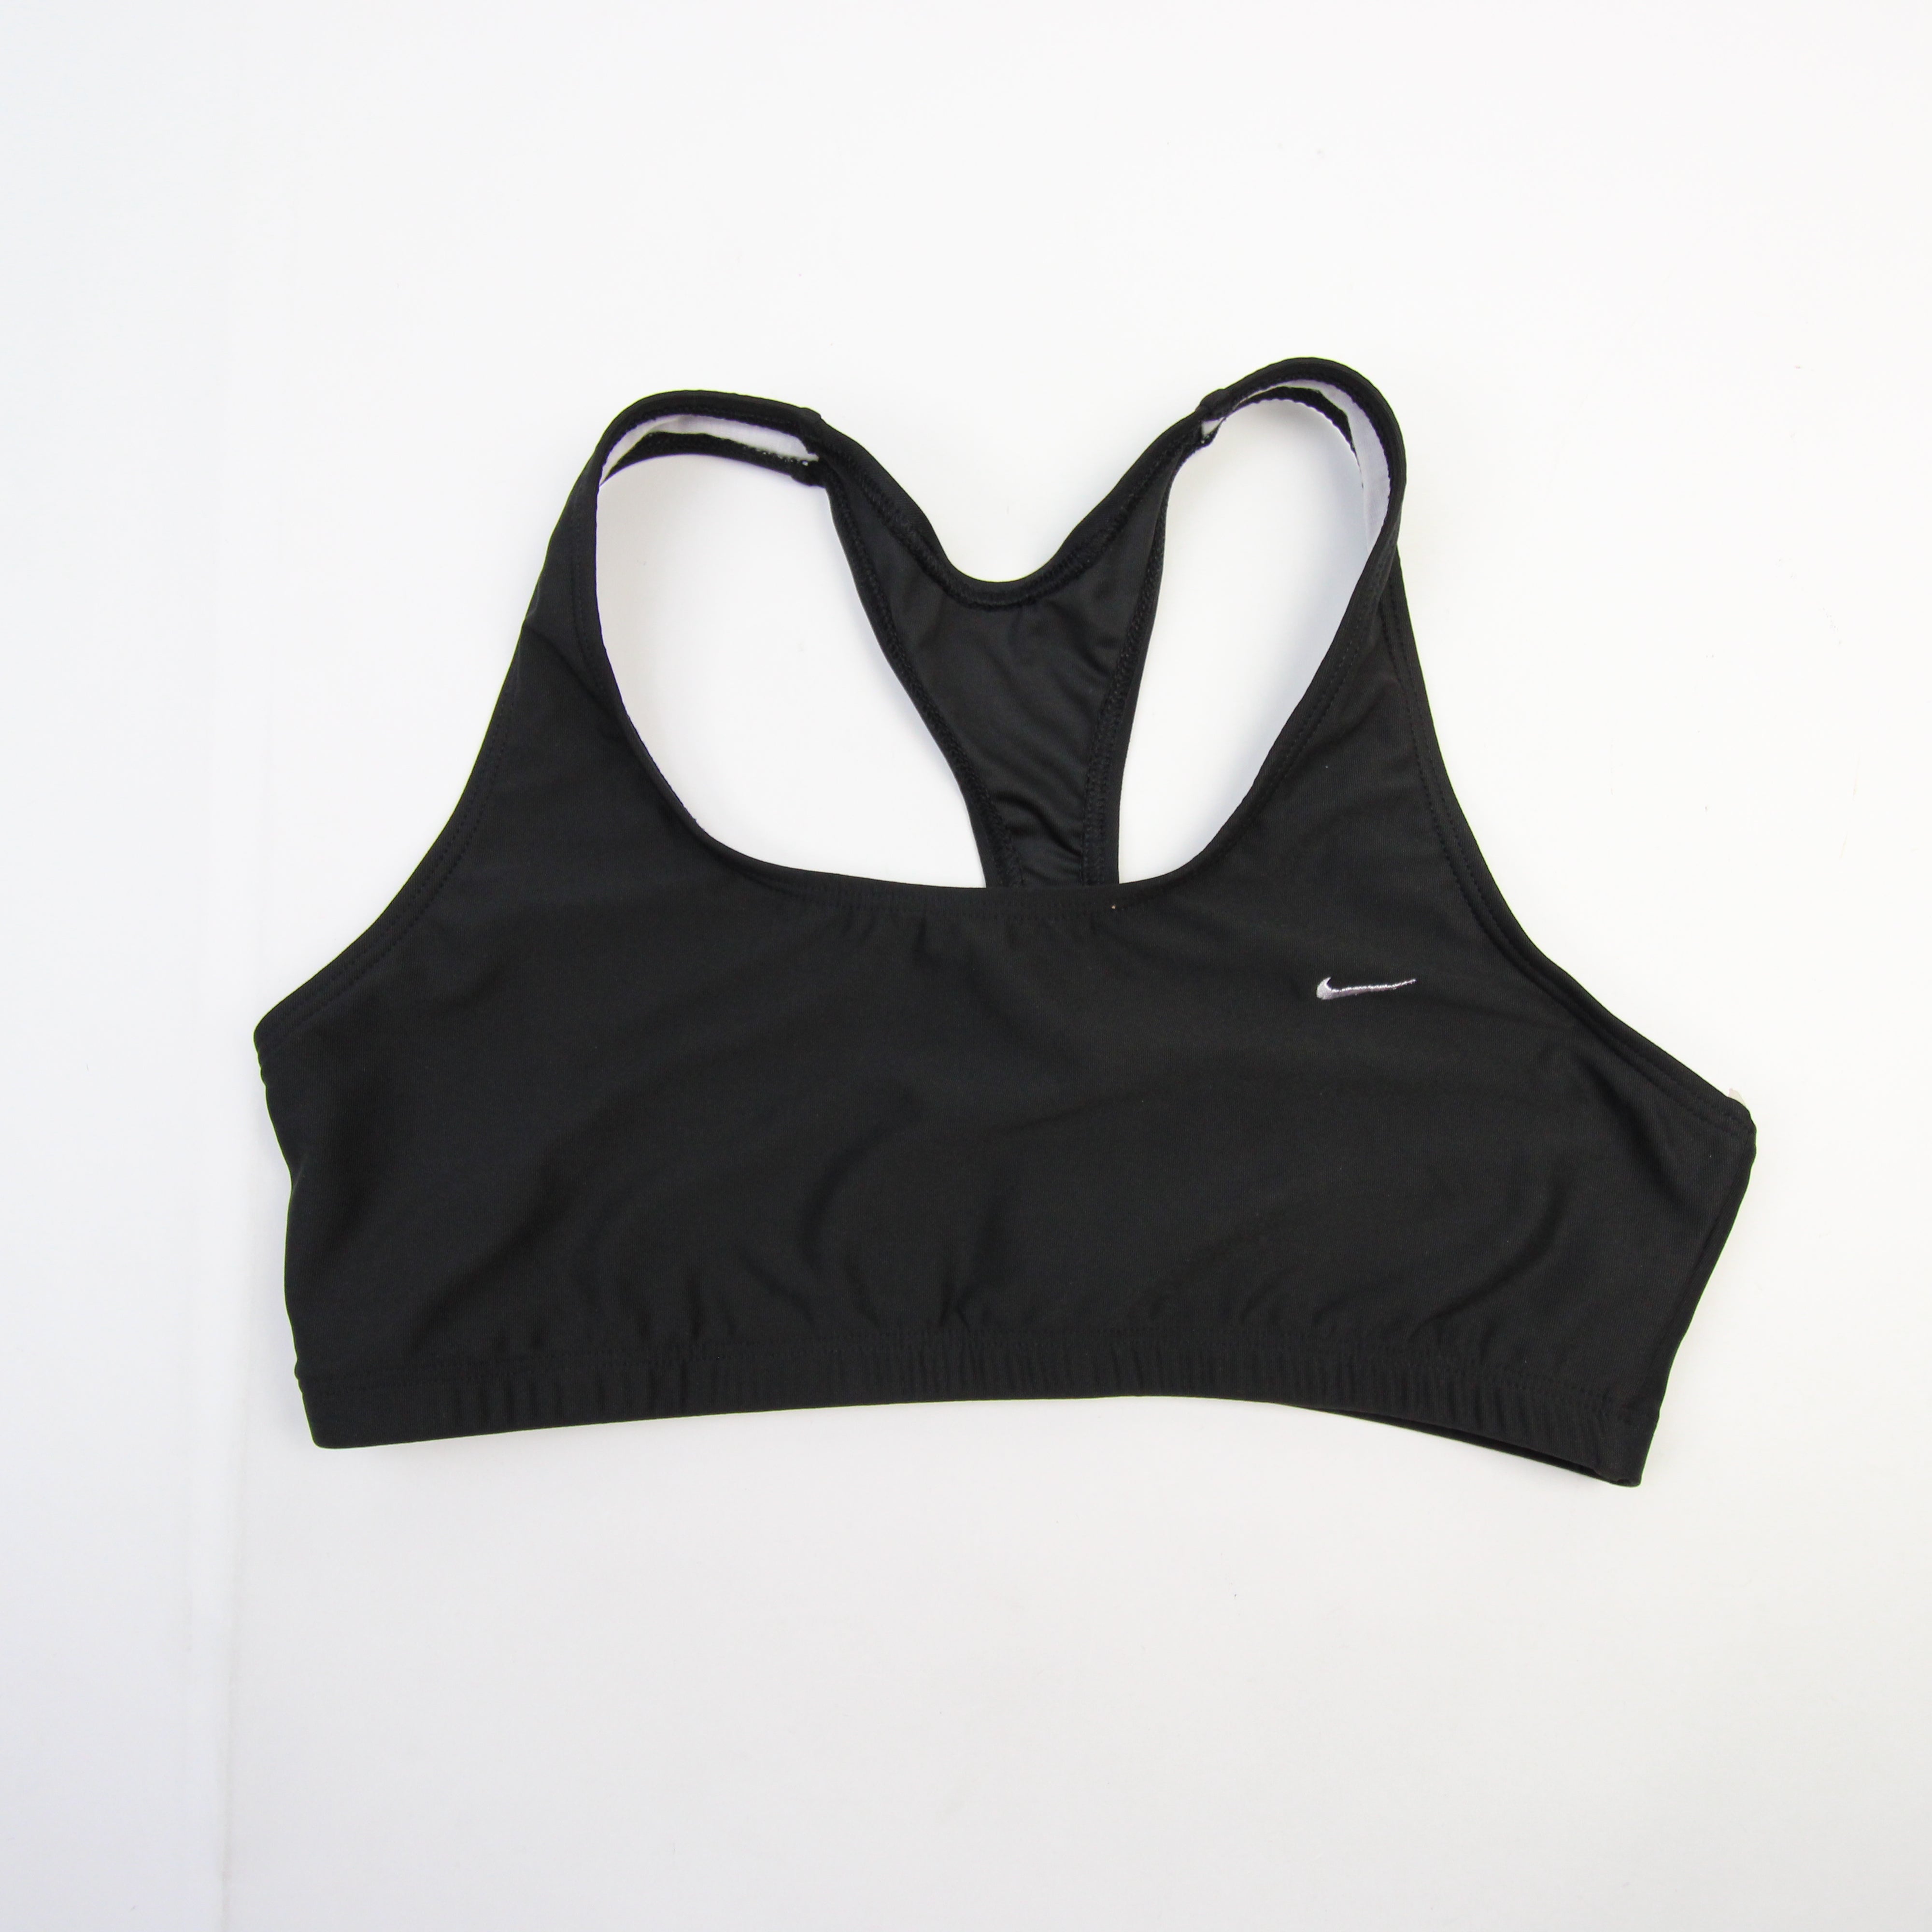 Nike Dri-Fit Sports Bra Women's Black New with Tags XL